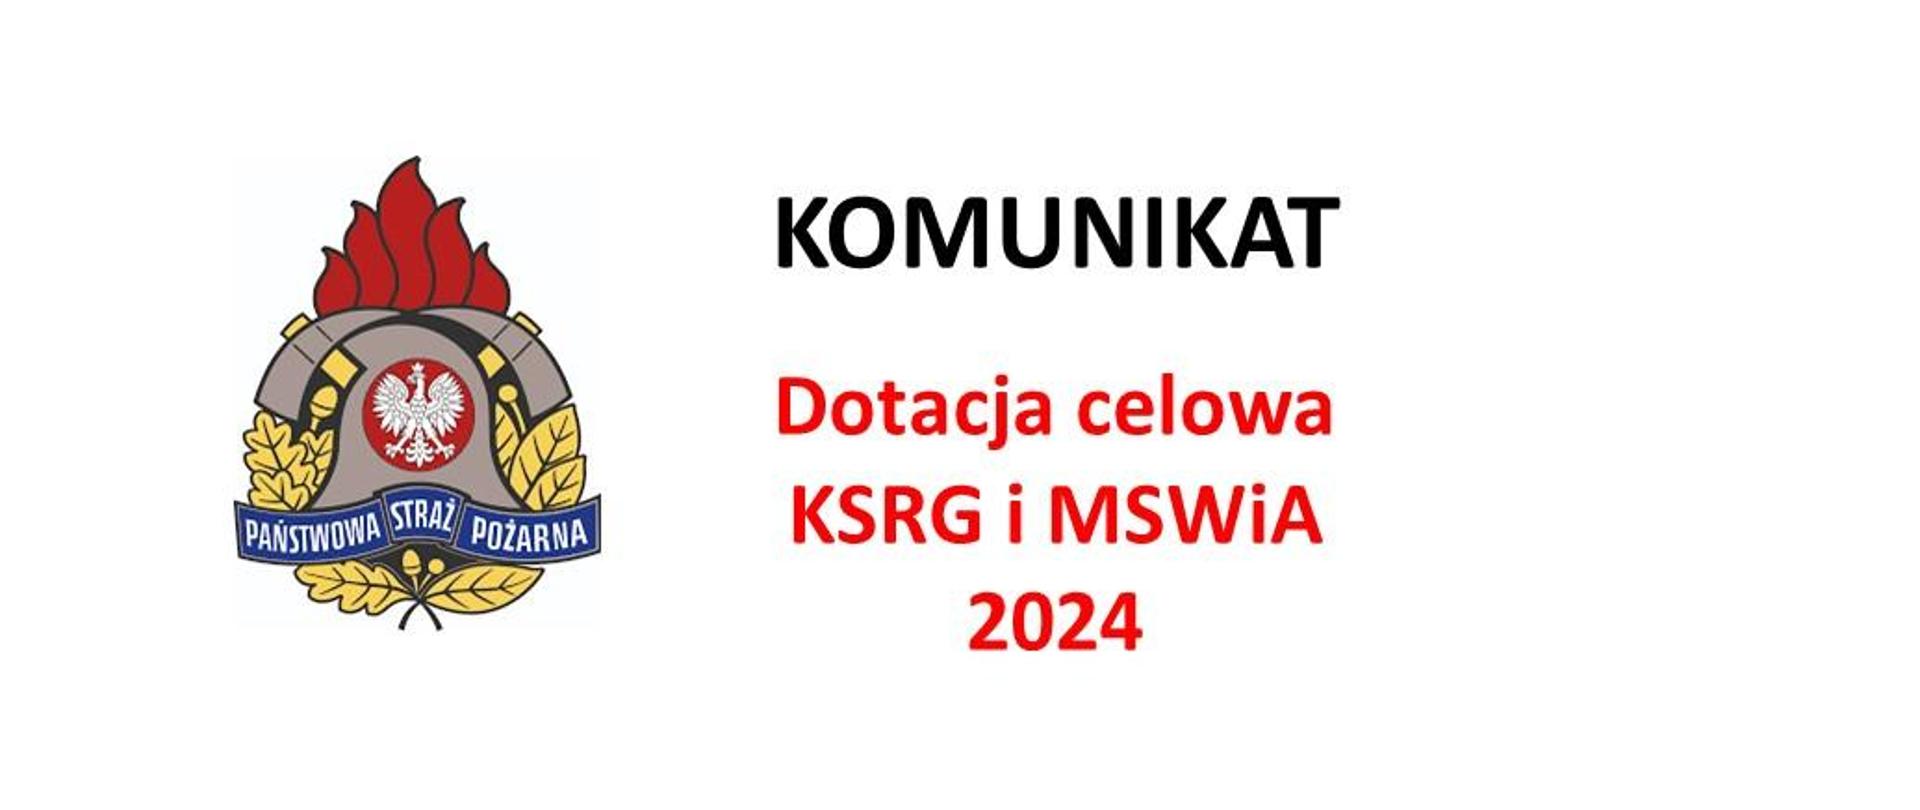 Komunikat dotacja celowa KSRG i MSWiA 2024